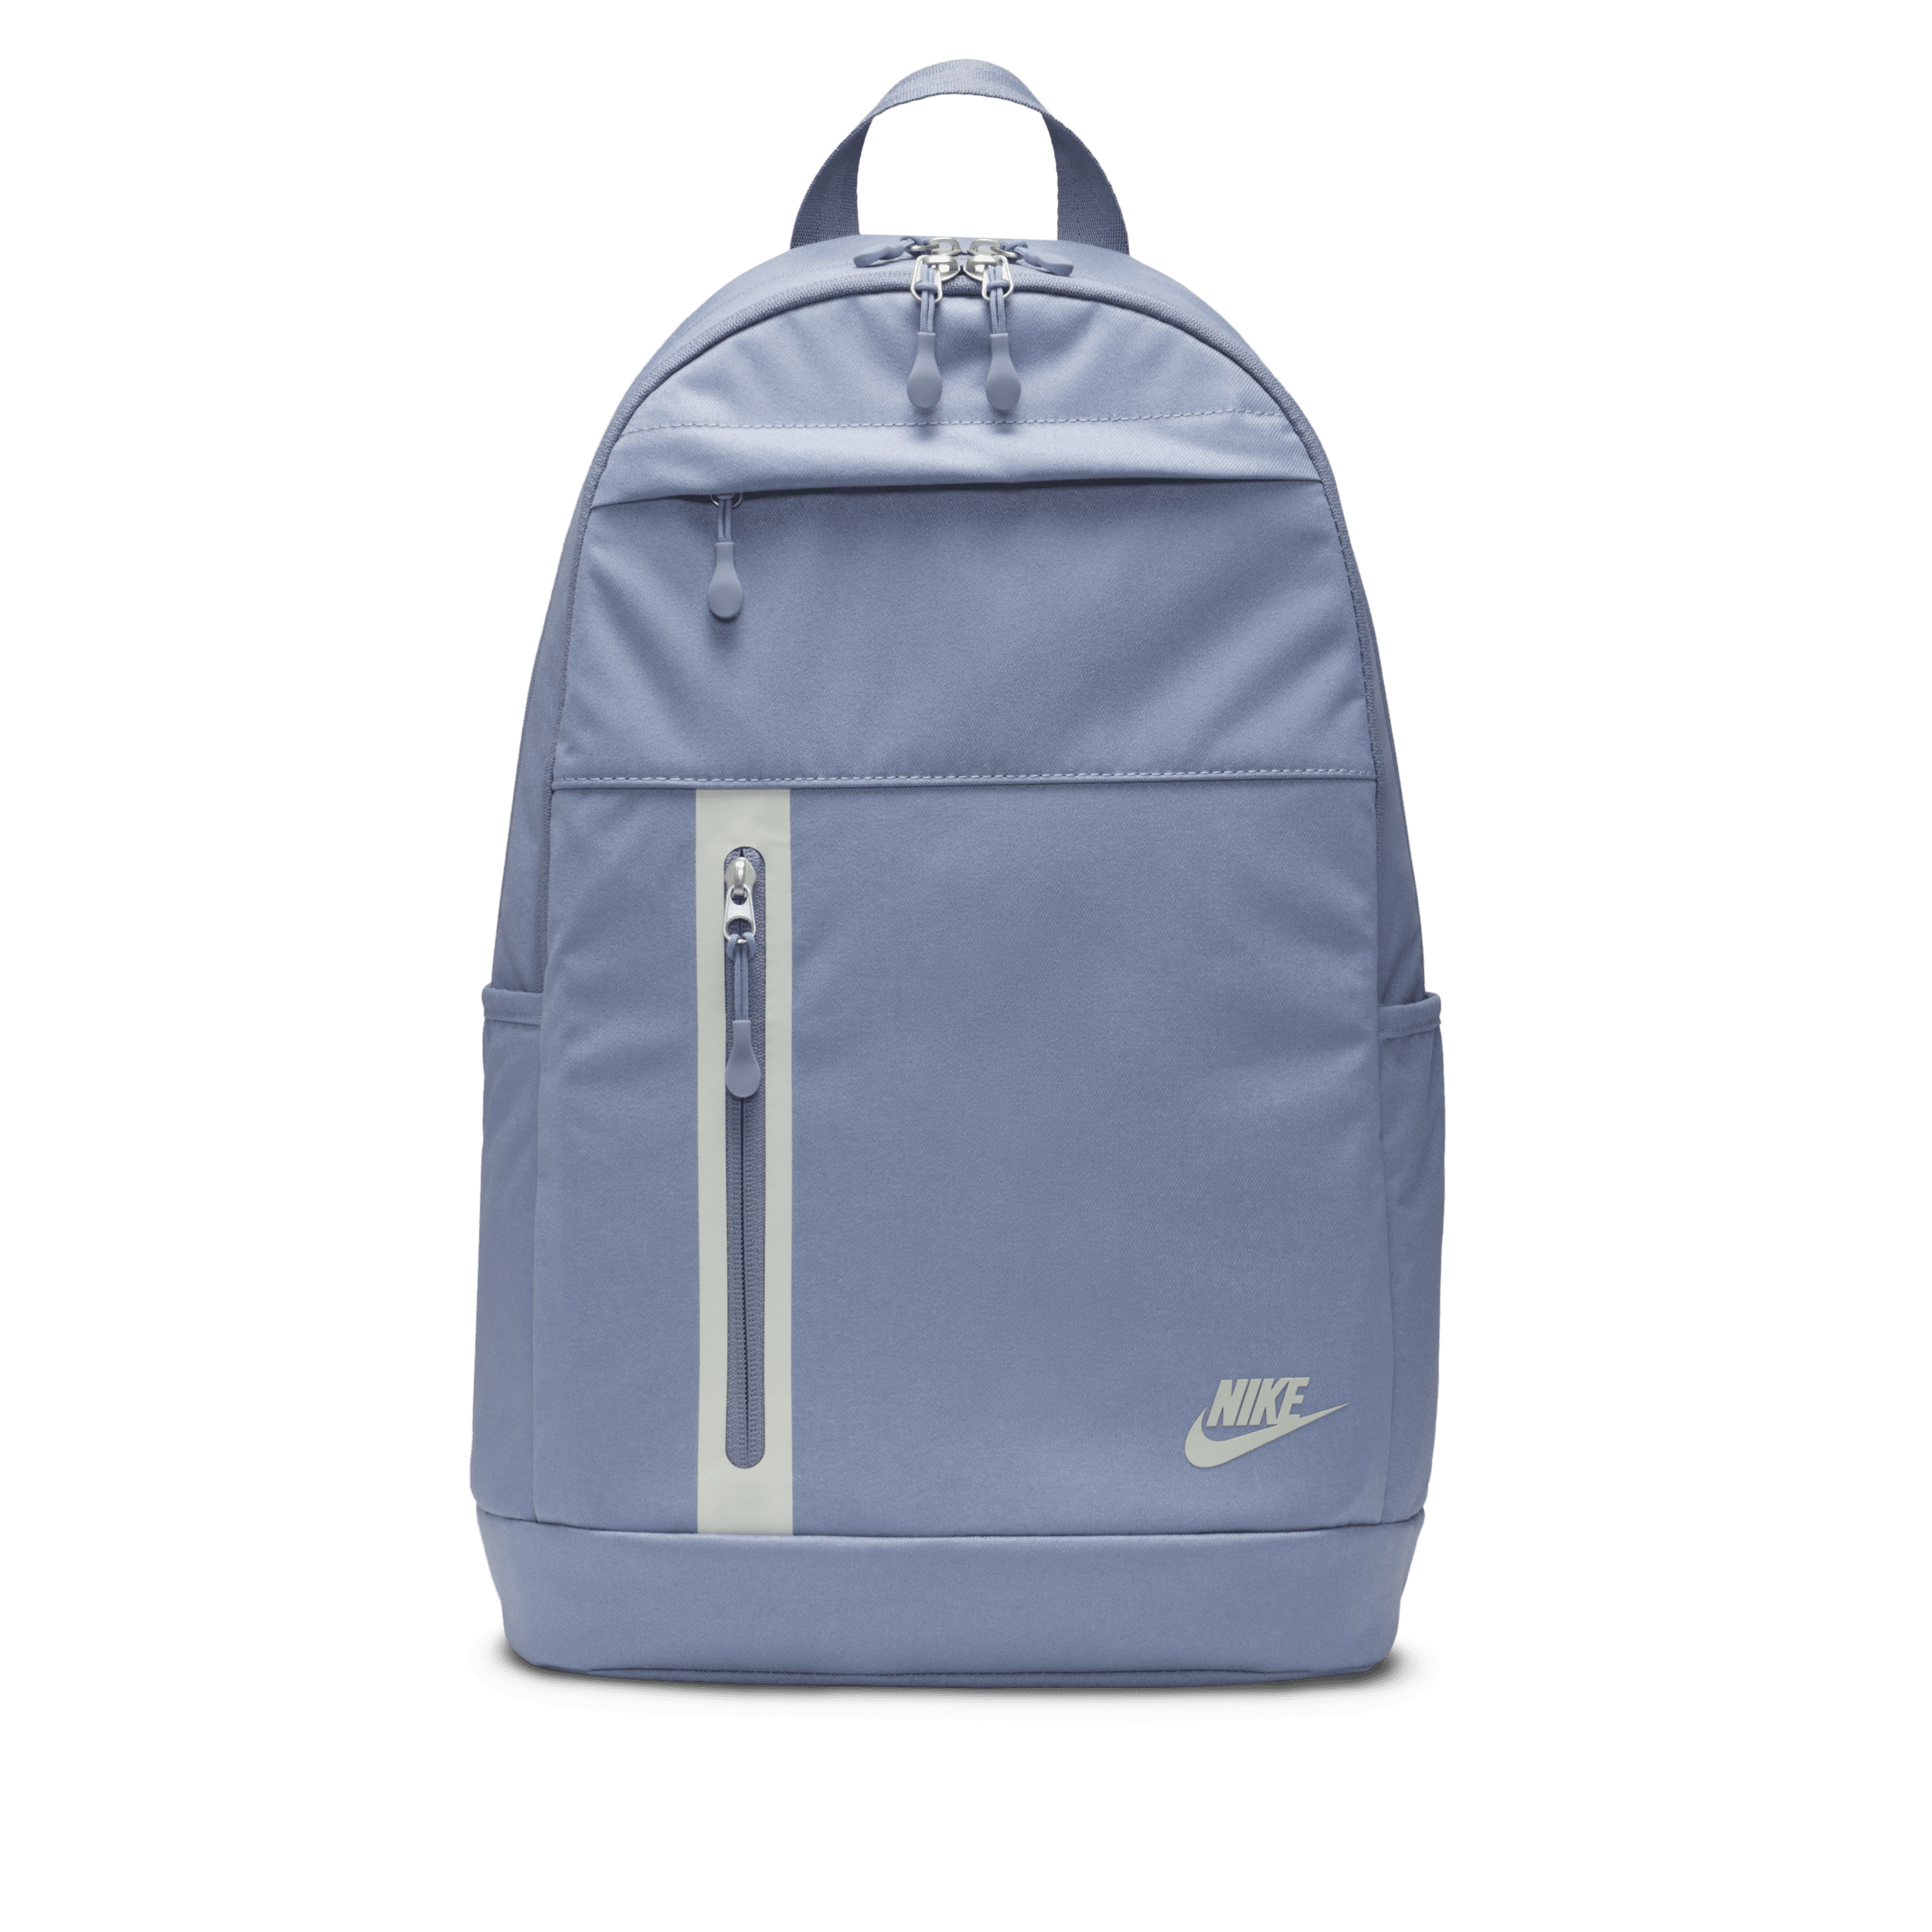 Nike Elemental Premium Rugzak (21 liter) Blauw